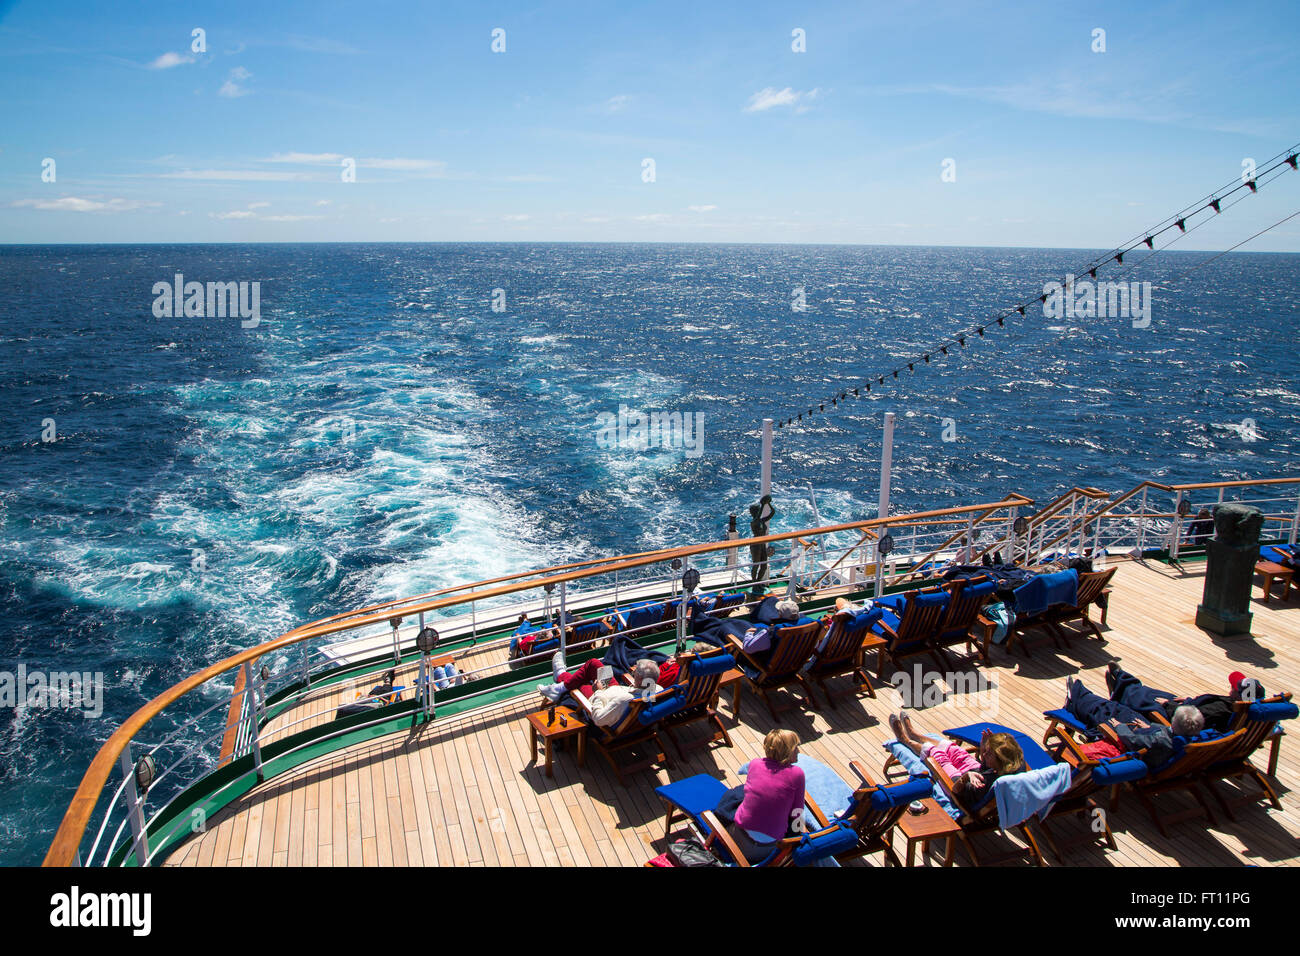 Les passagers de détente sur le pont du bateau de croisière MS Deutschland Peter Deilmann Reederei, Océan Atlantique, près de Portugal Banque D'Images